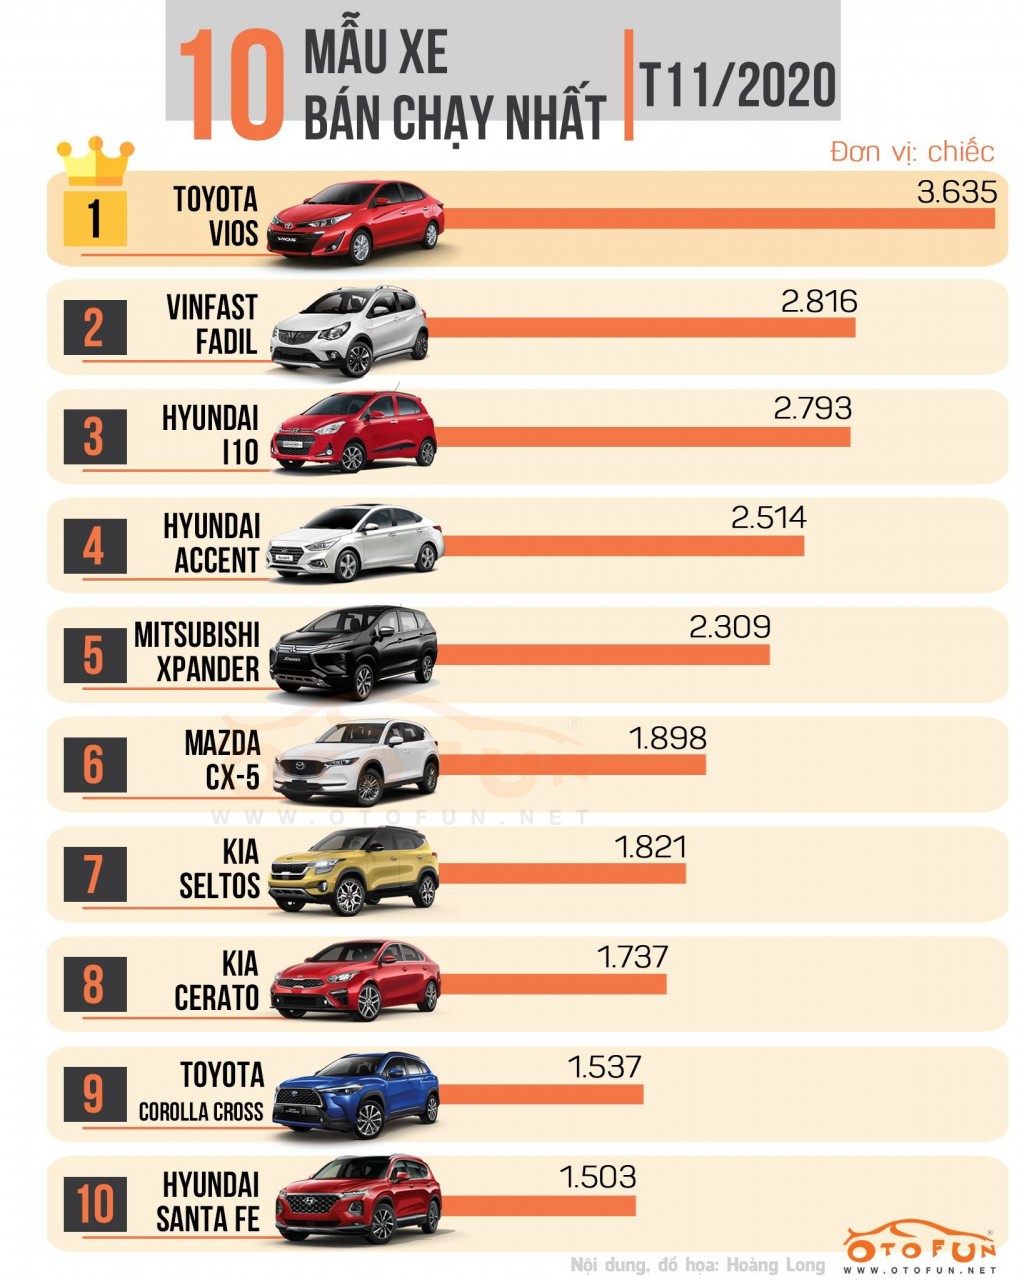 [Infographic] Top 10 xe bán chạy nhất tháng 11/2020